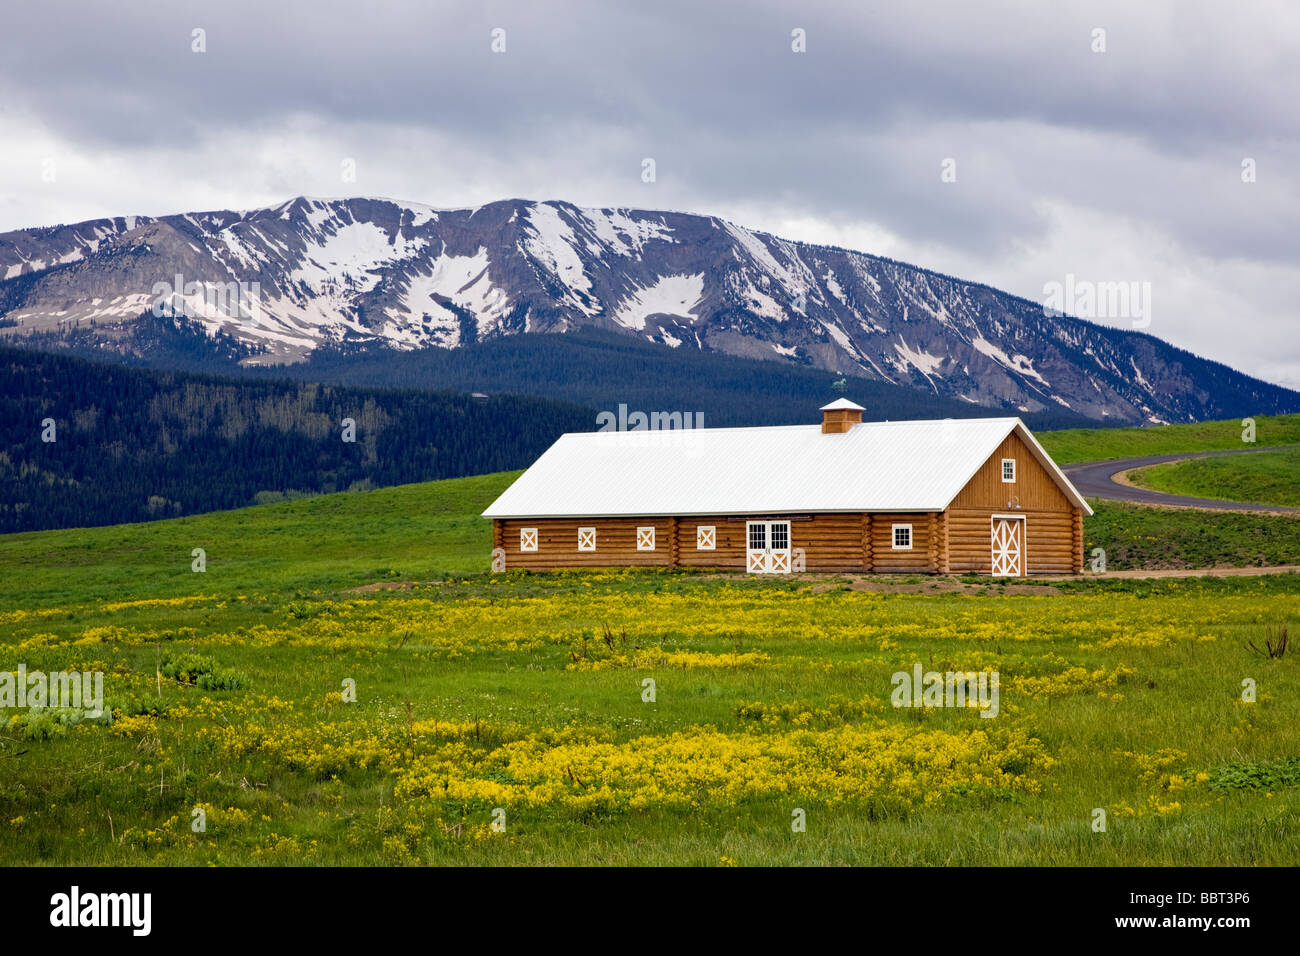 Inicie sesión Horse Barn en una pradera llena de flores silvestres amarillas Crested Butte Colorado, EE.UU. Foto de stock